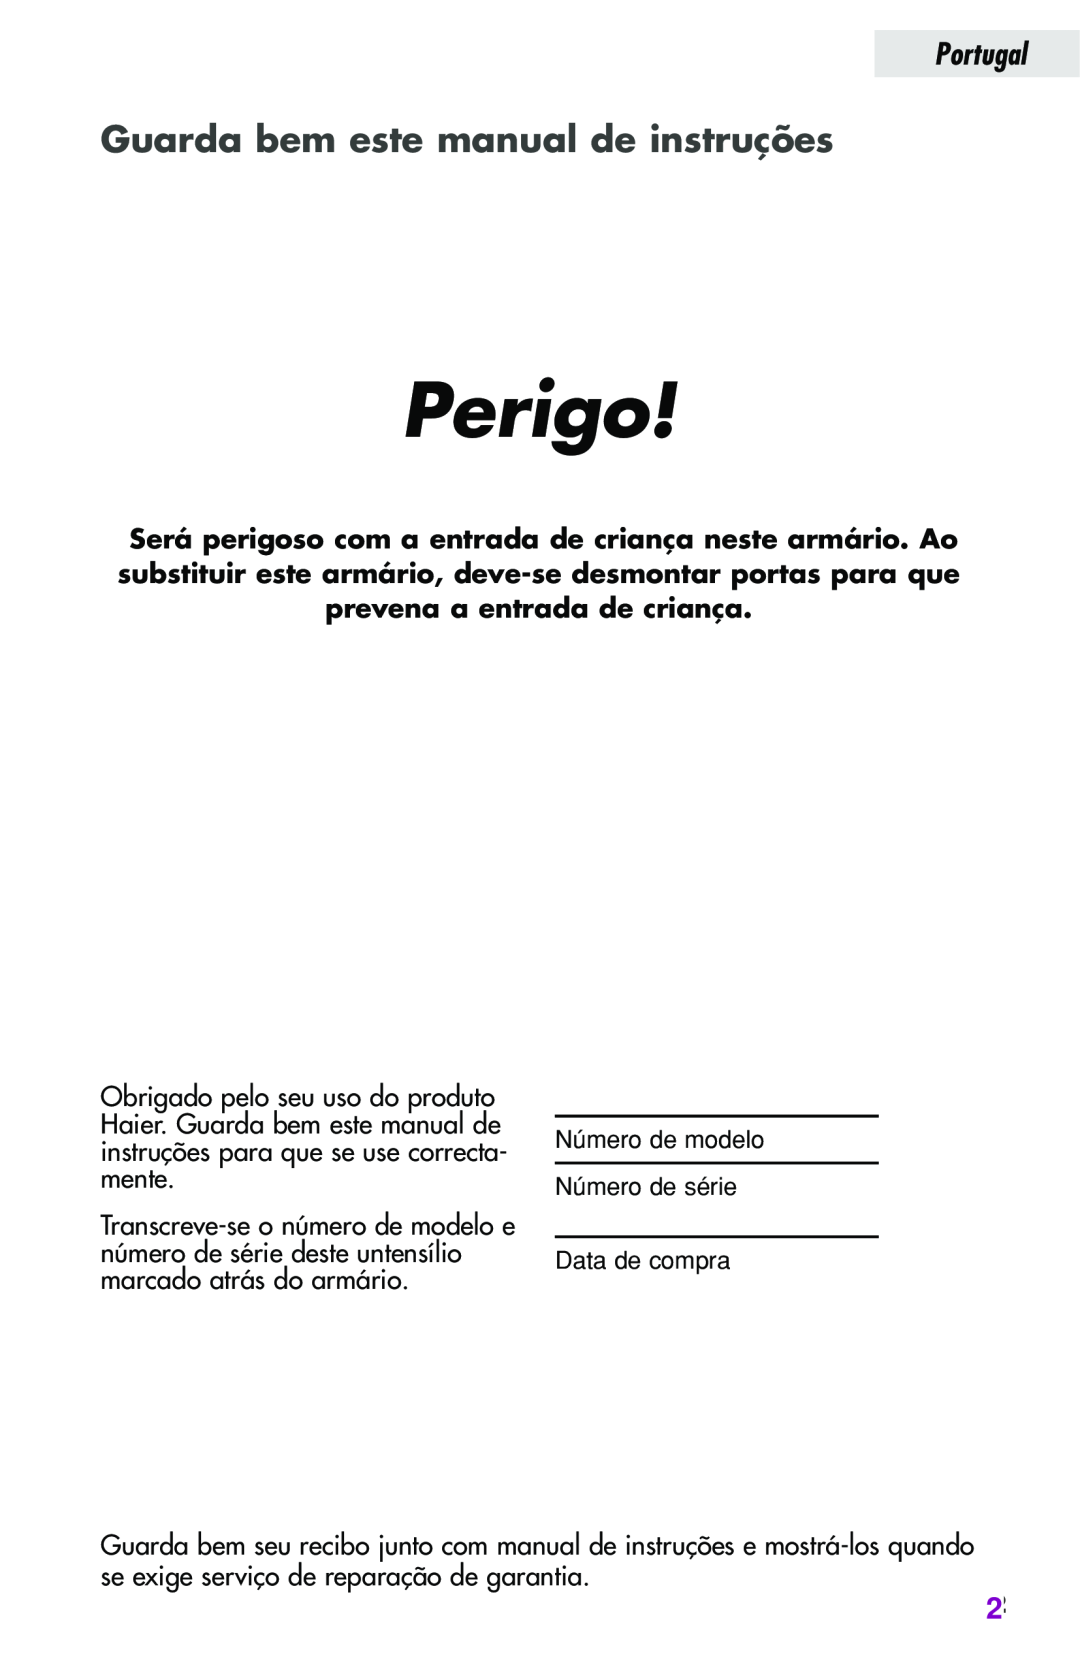 Haier JC-82GB Perigo, Guarda bem este manual de instruções, Portugal 